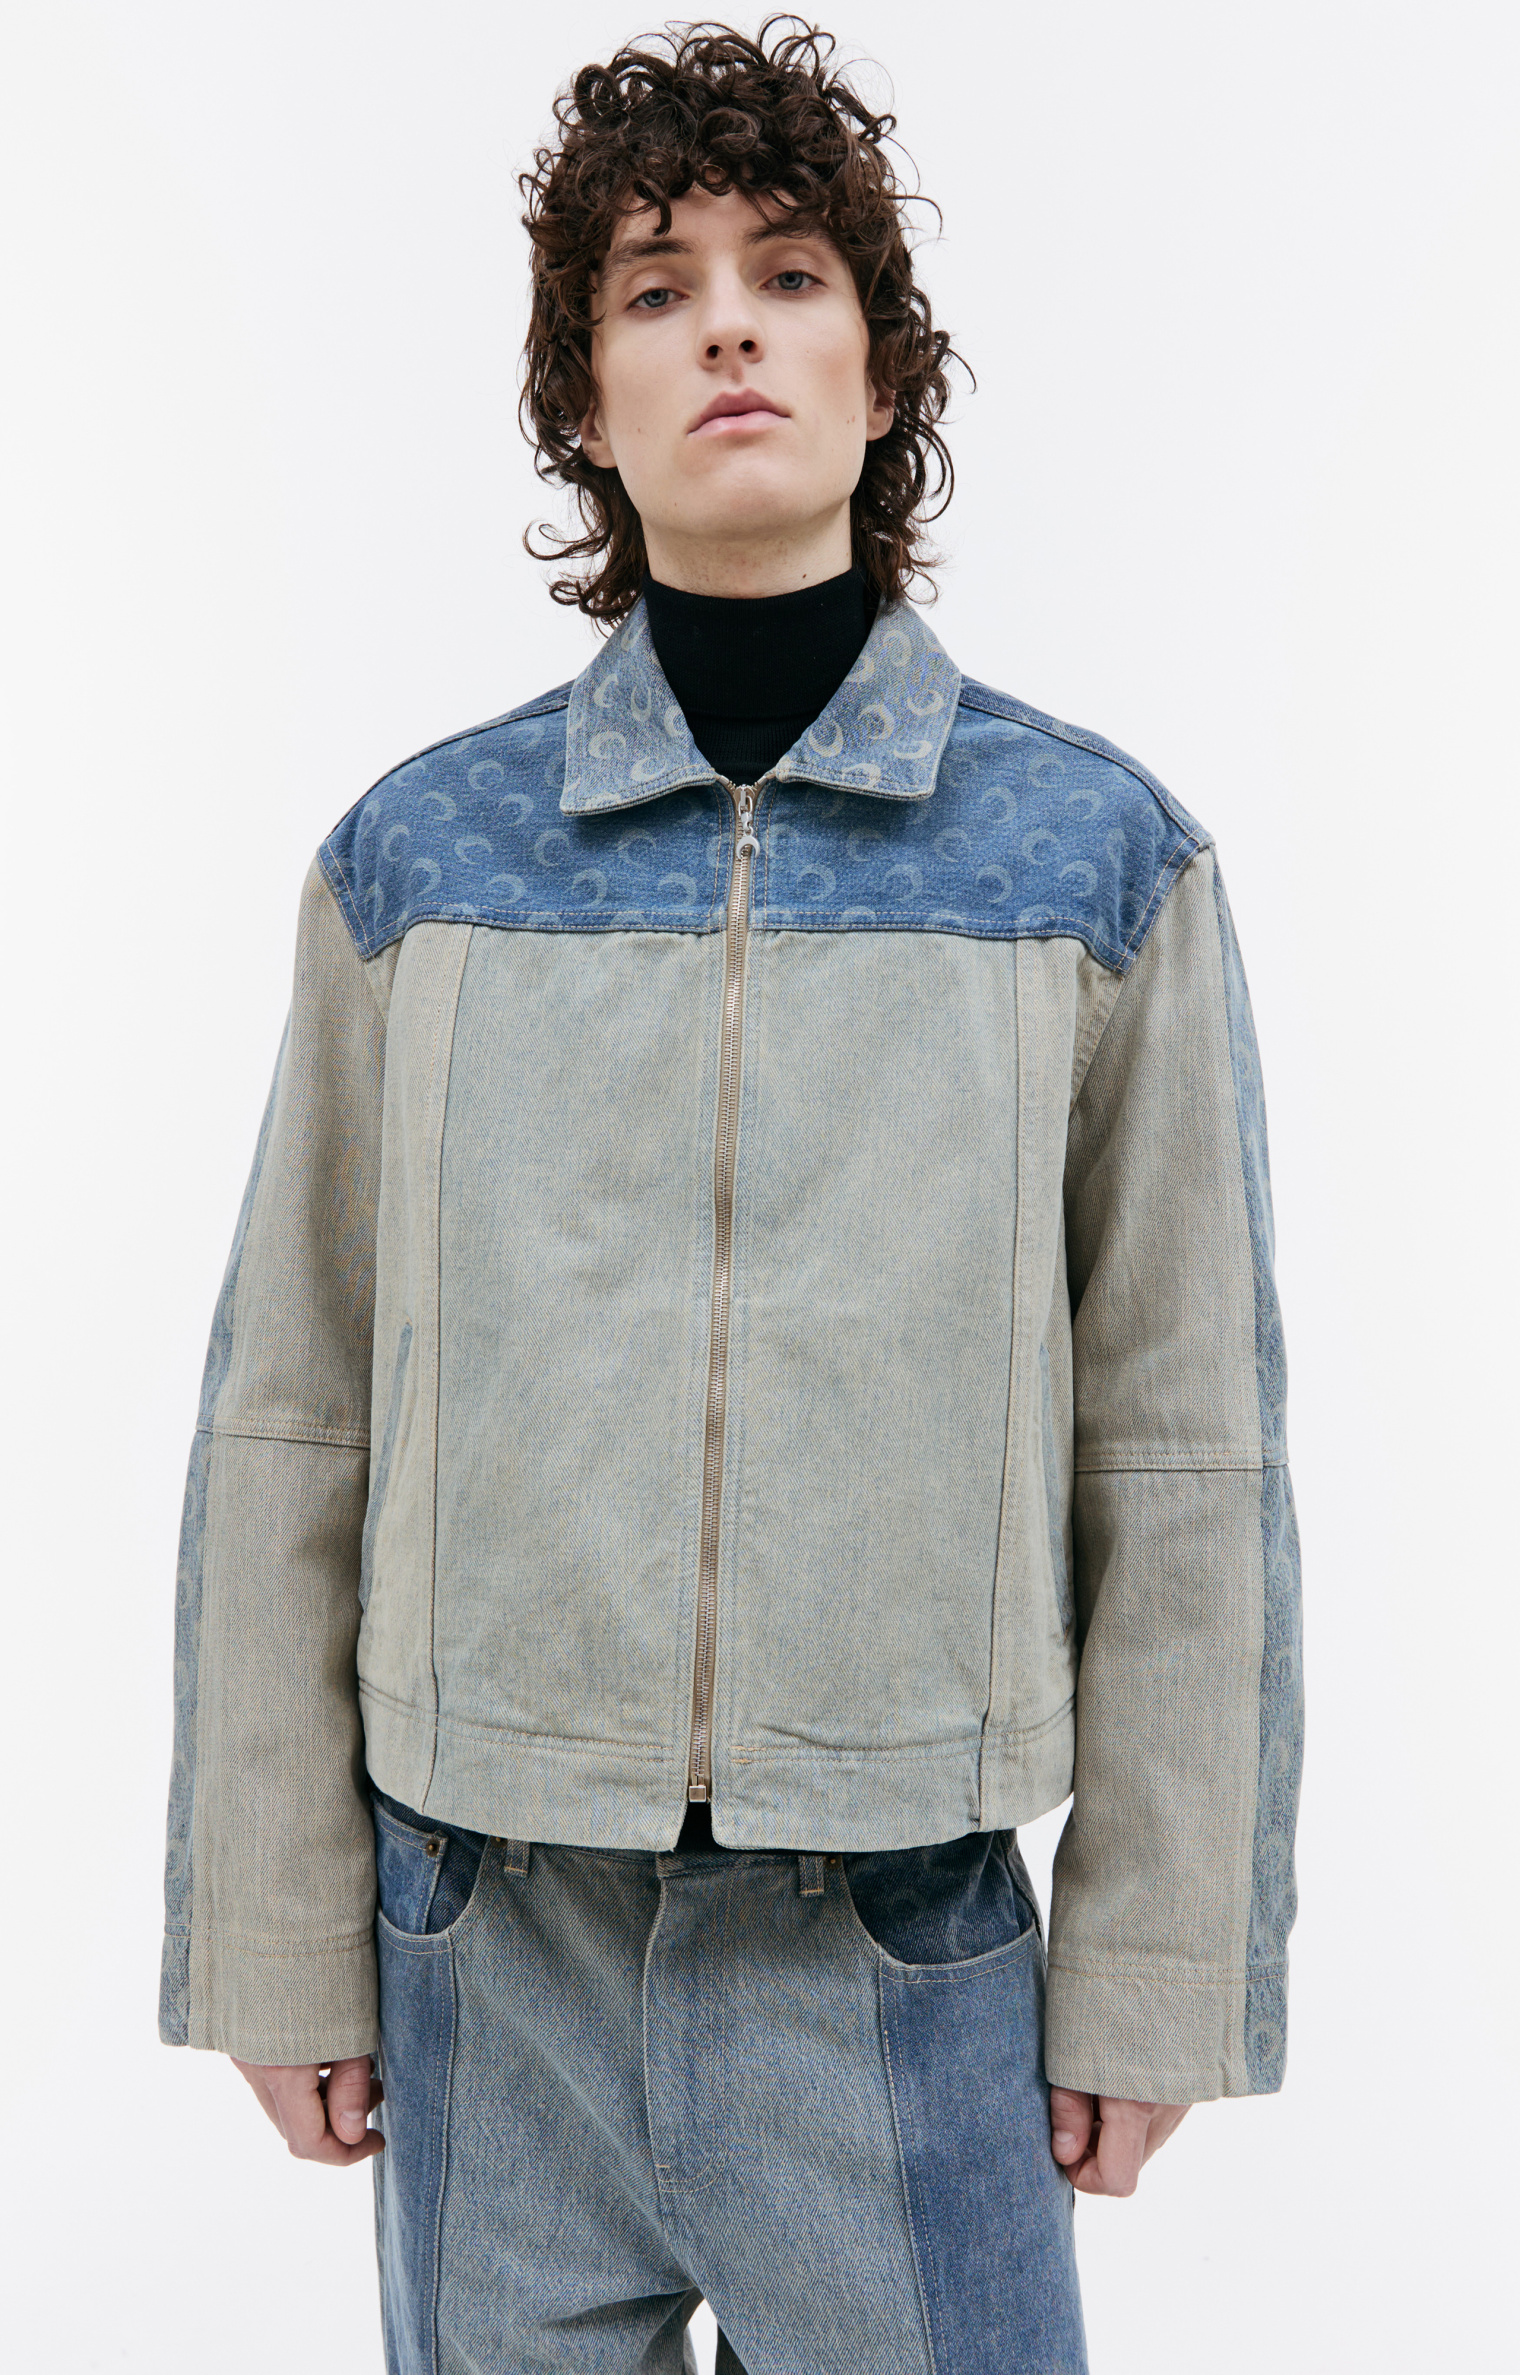 Buy MARINE SERRE men blue fading denim jacket for $846 online on 